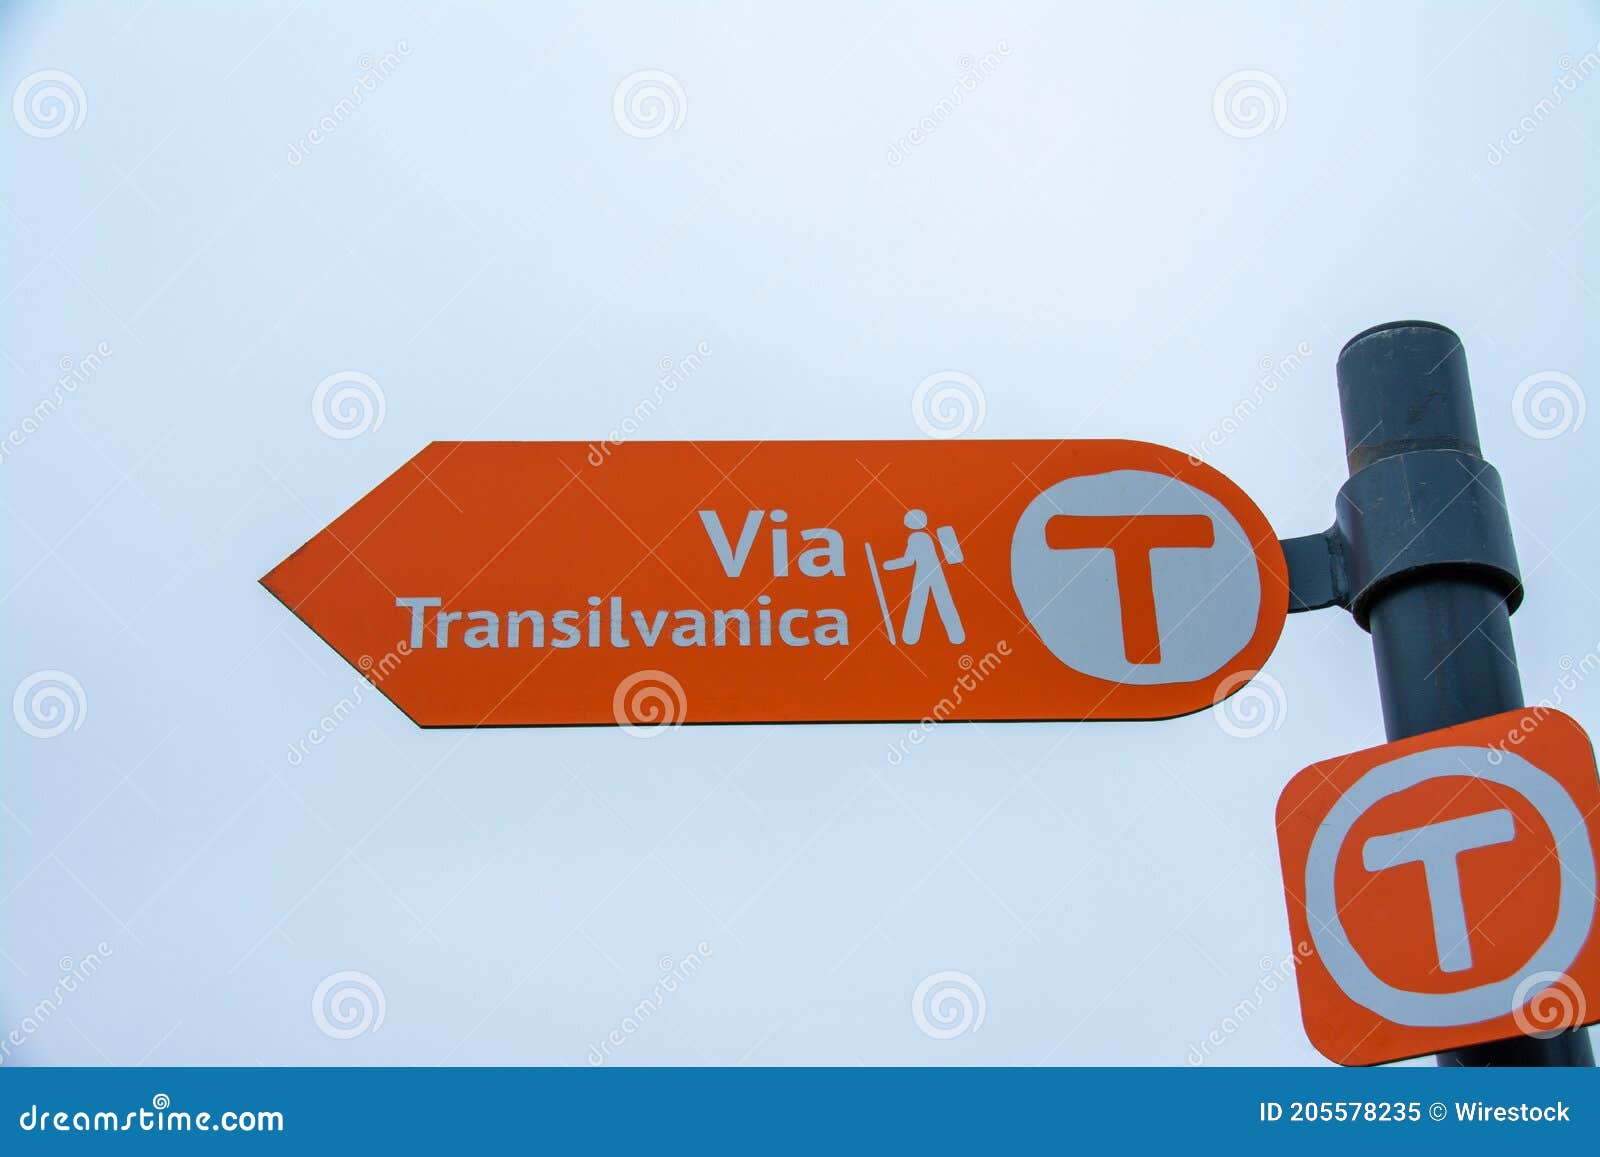 via transilvanica tourist indicator